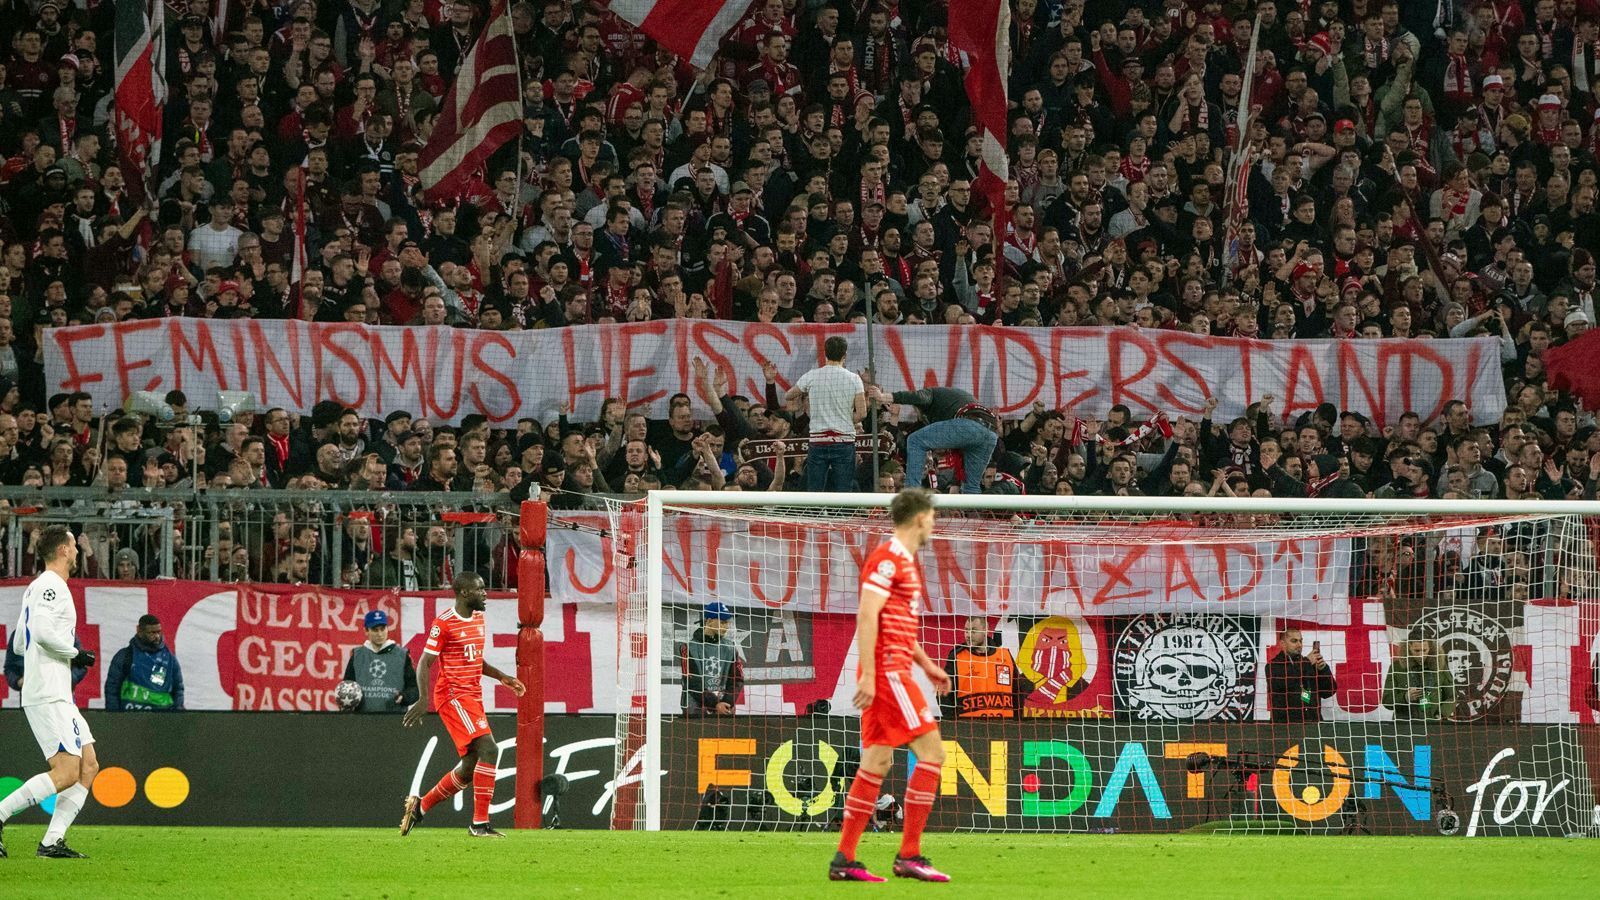 
                <strong>"Feminismus heißt Widerstand"</strong><br>
                Das Spiel gegen PSG fand am Weltfrauentag statt, entsprechend solidarisierten sich die Fans des FC Bayern mit der feministischen Bewegung. "Feminismus ist Widerstand", war auf einem Banner zu lesen. 
              